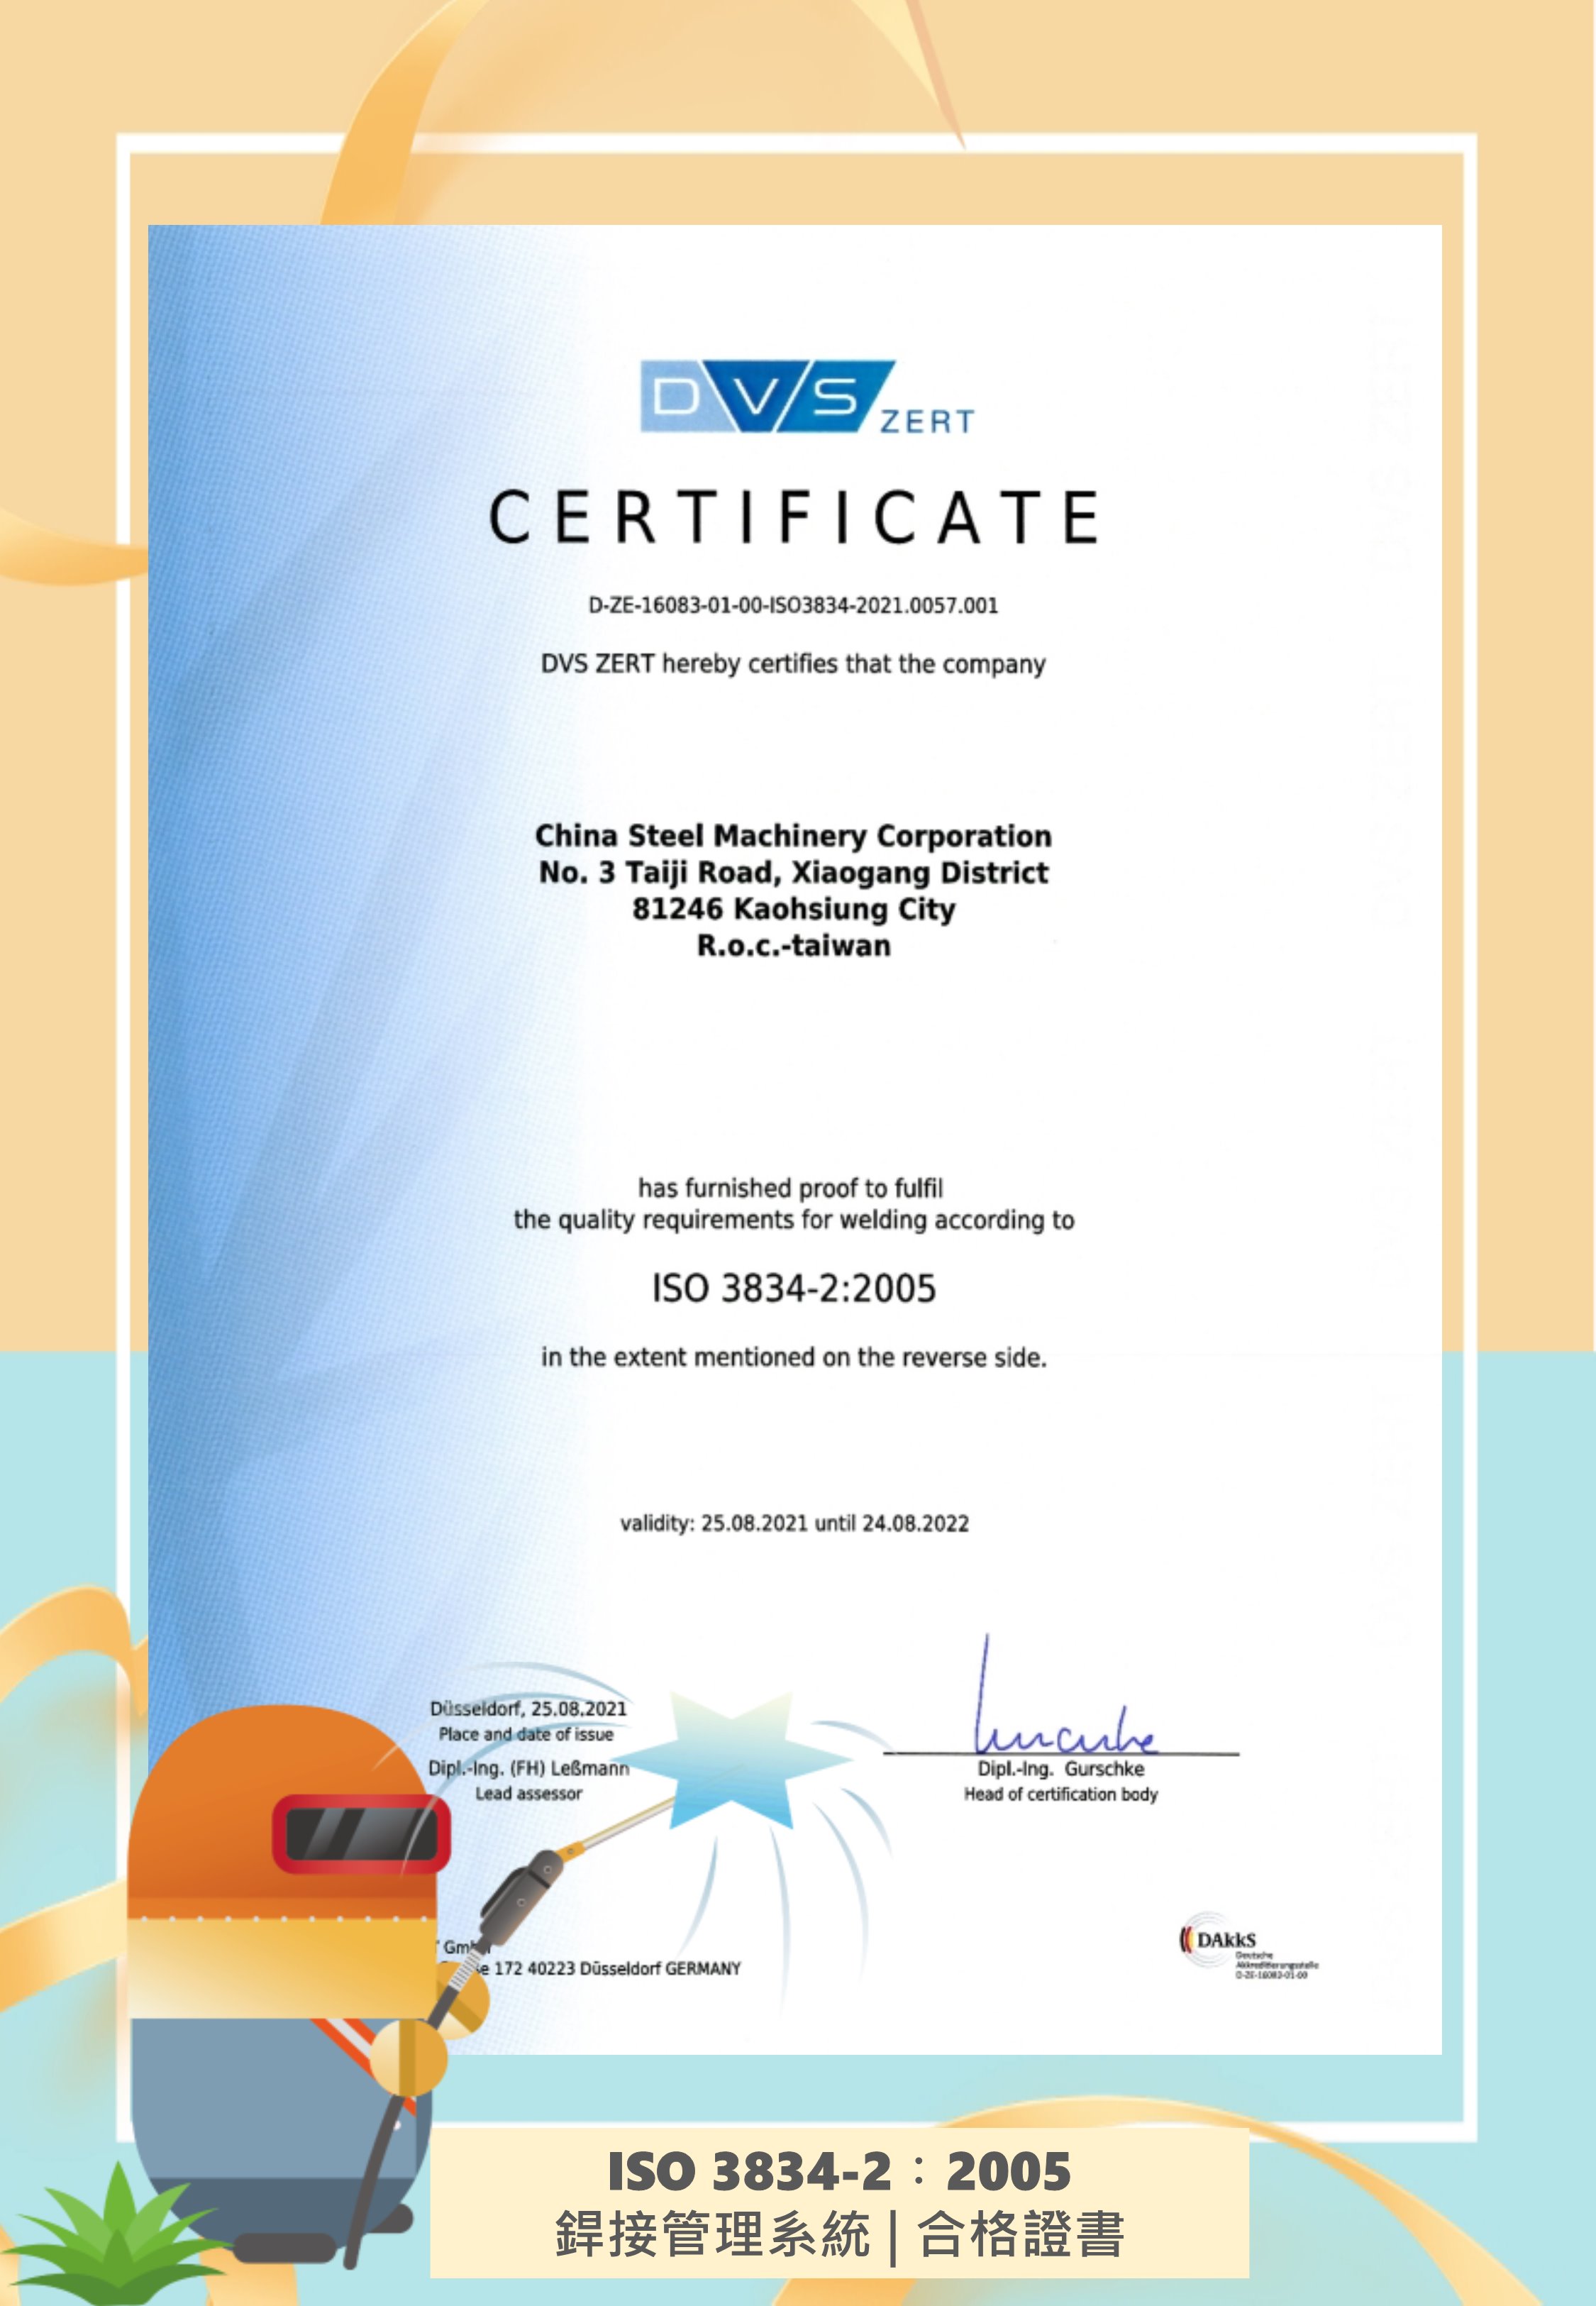 中機通過德國銲接協會(DVS)雙驗證，取得EN1090-2 & ISO 3834-2兩張證書。